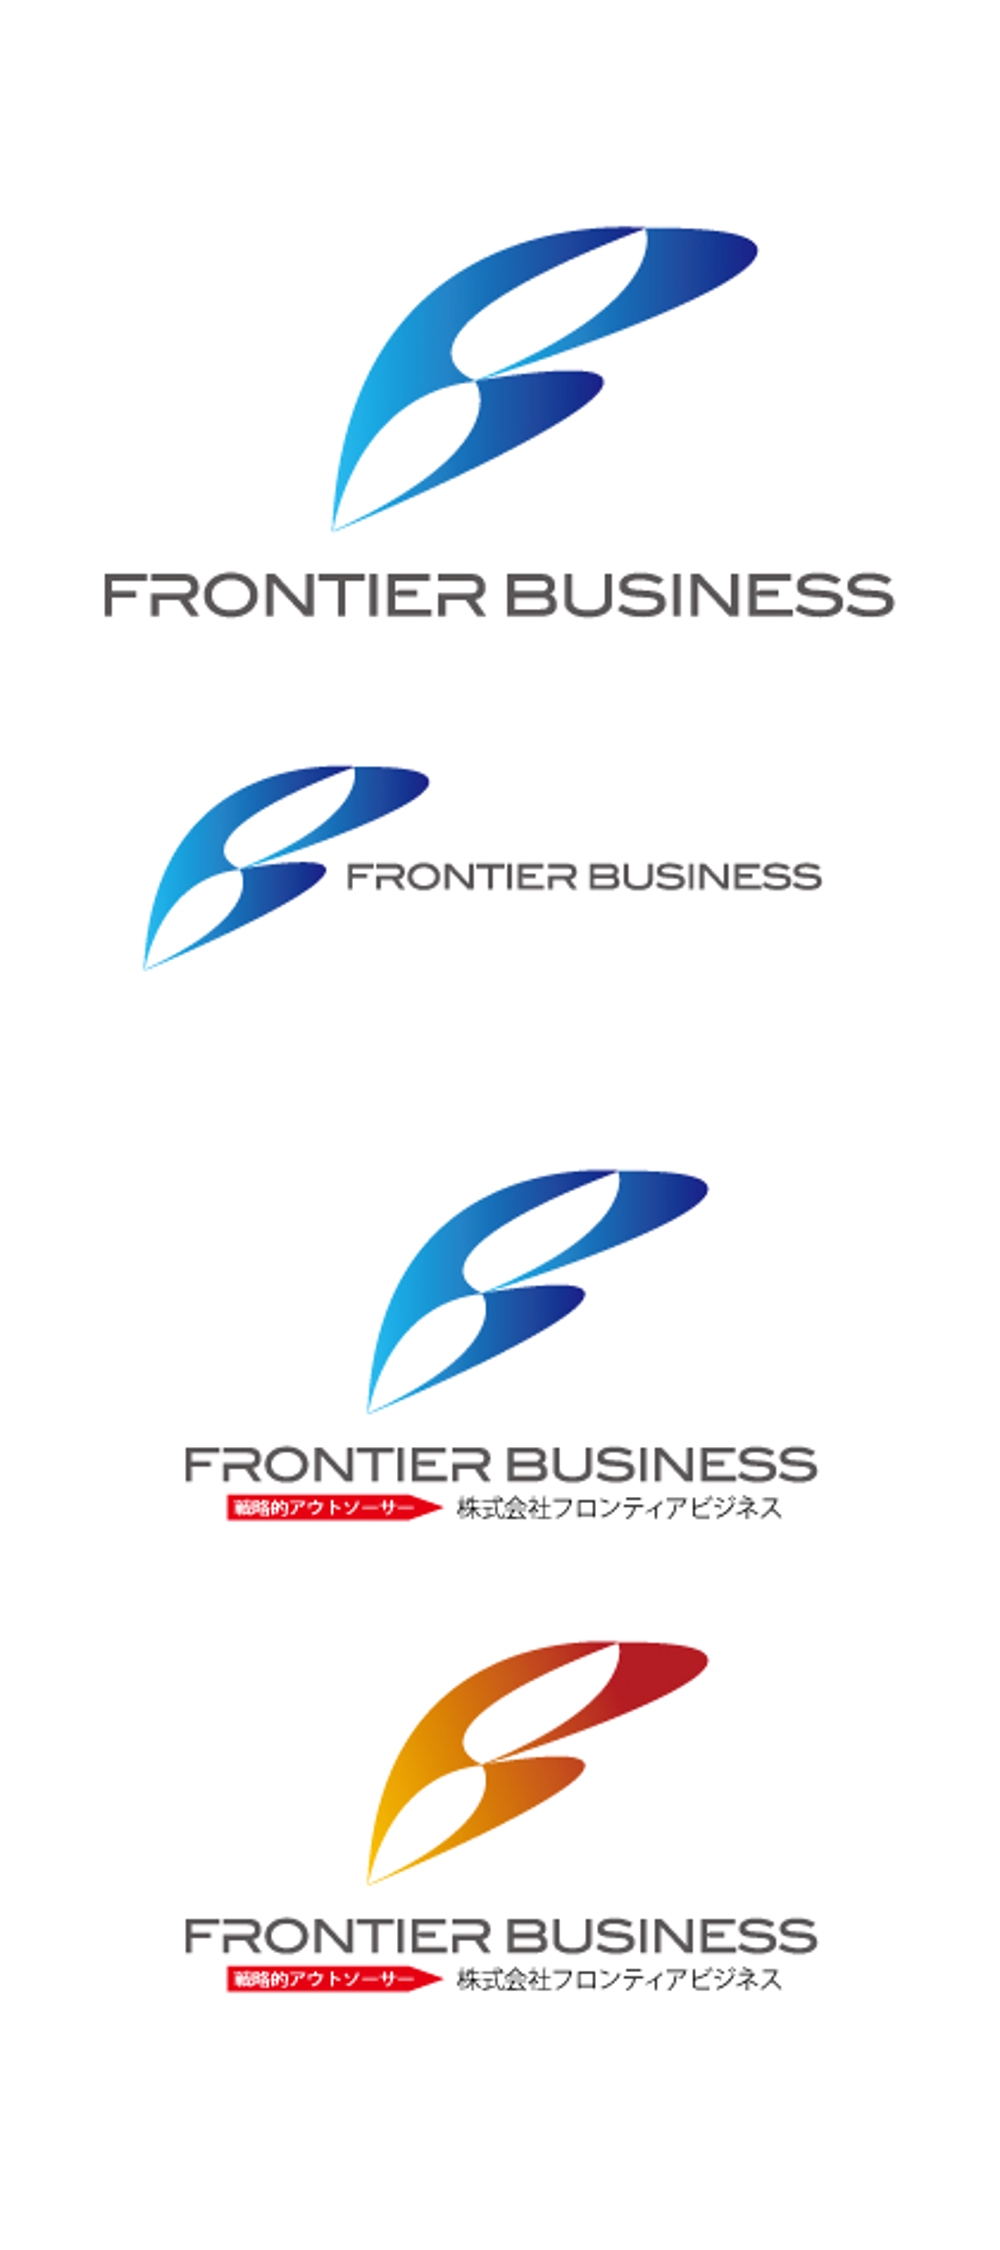 FRONTIER BUSINESS01.jpg